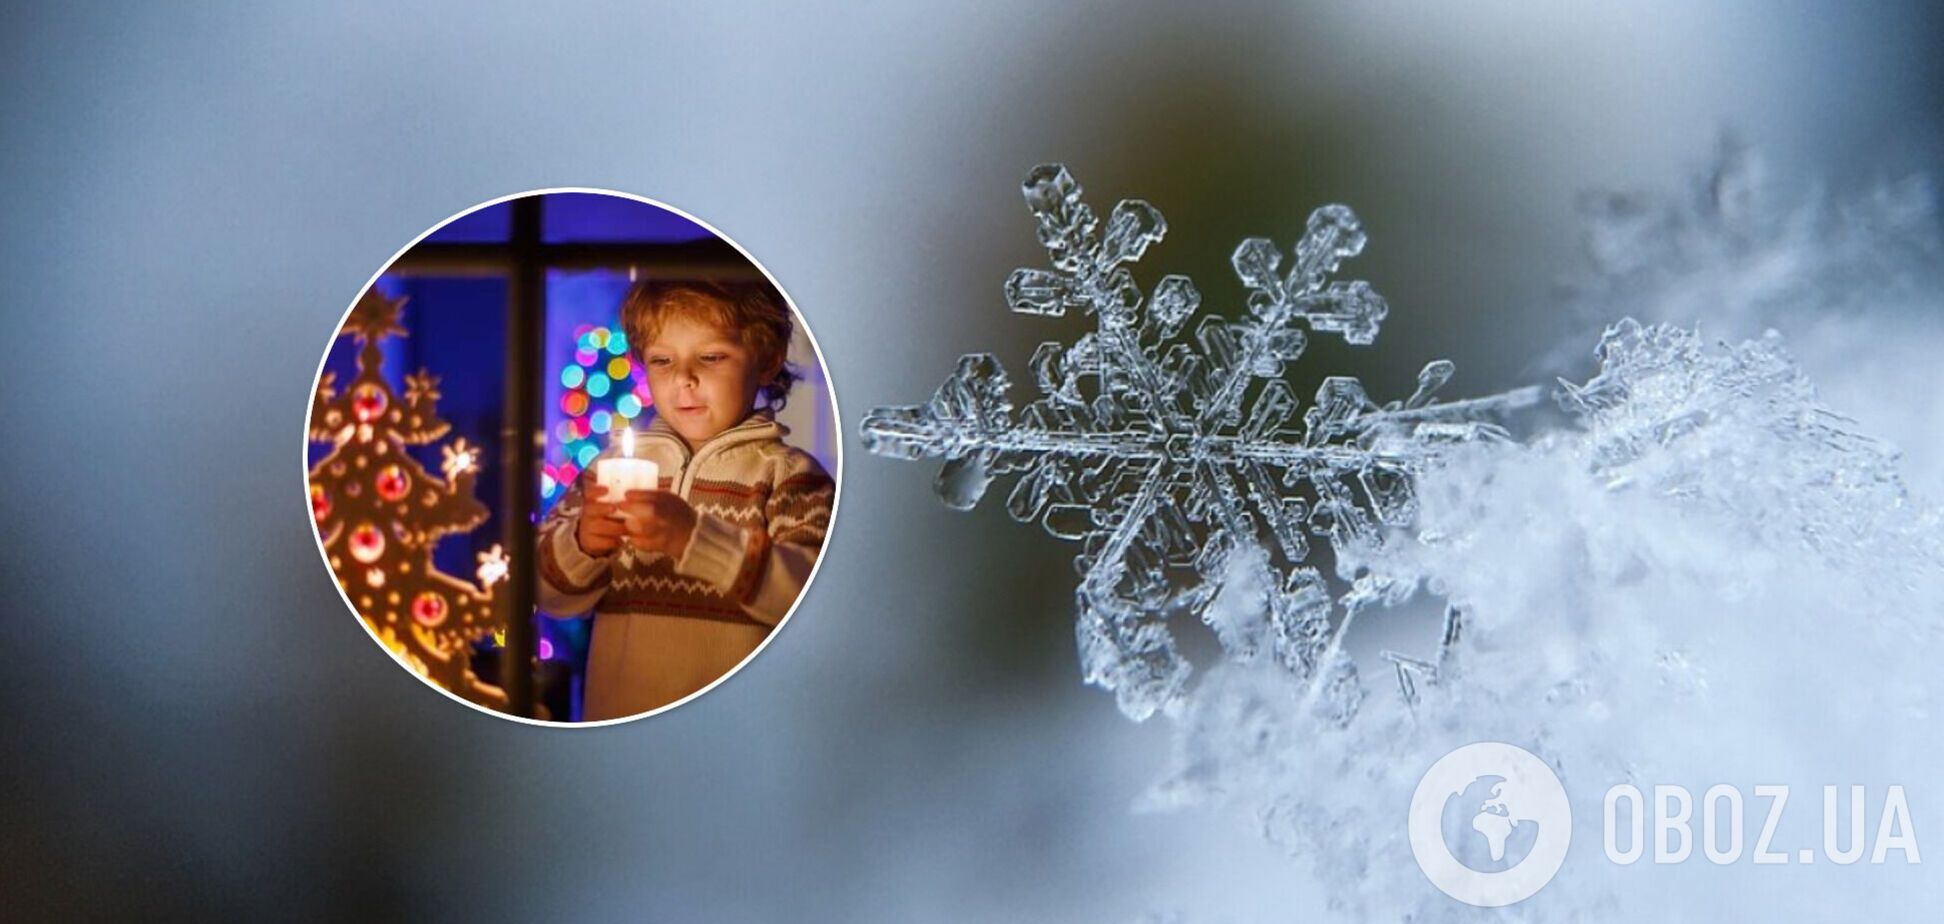 Синоптик предупредил украинцев об 'аномальной' погоде на Николая и Новый год 2022: ждать ли снега